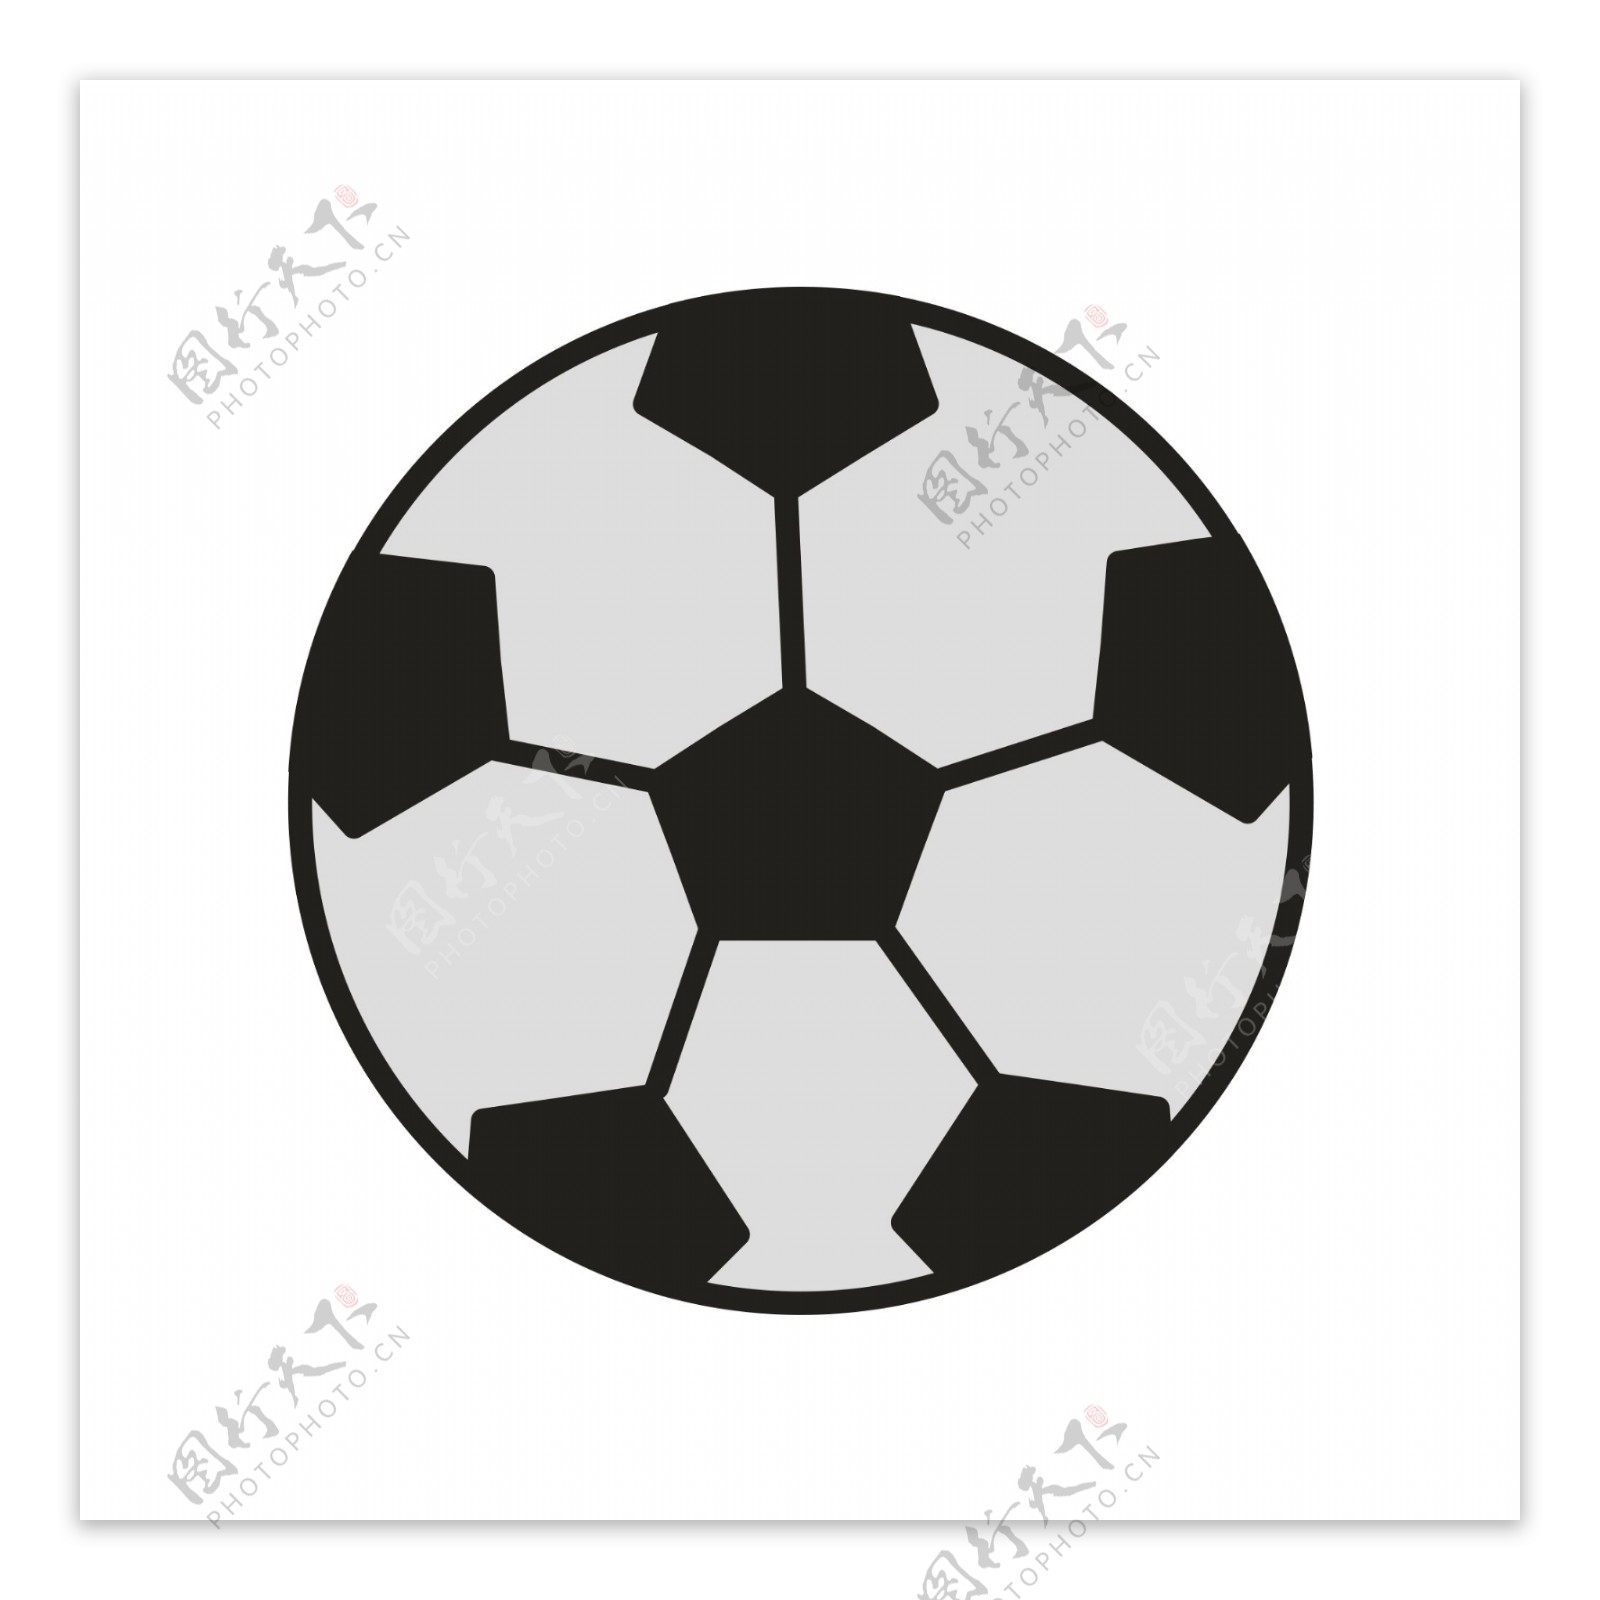 足球运动黑白图案足球矢量素材